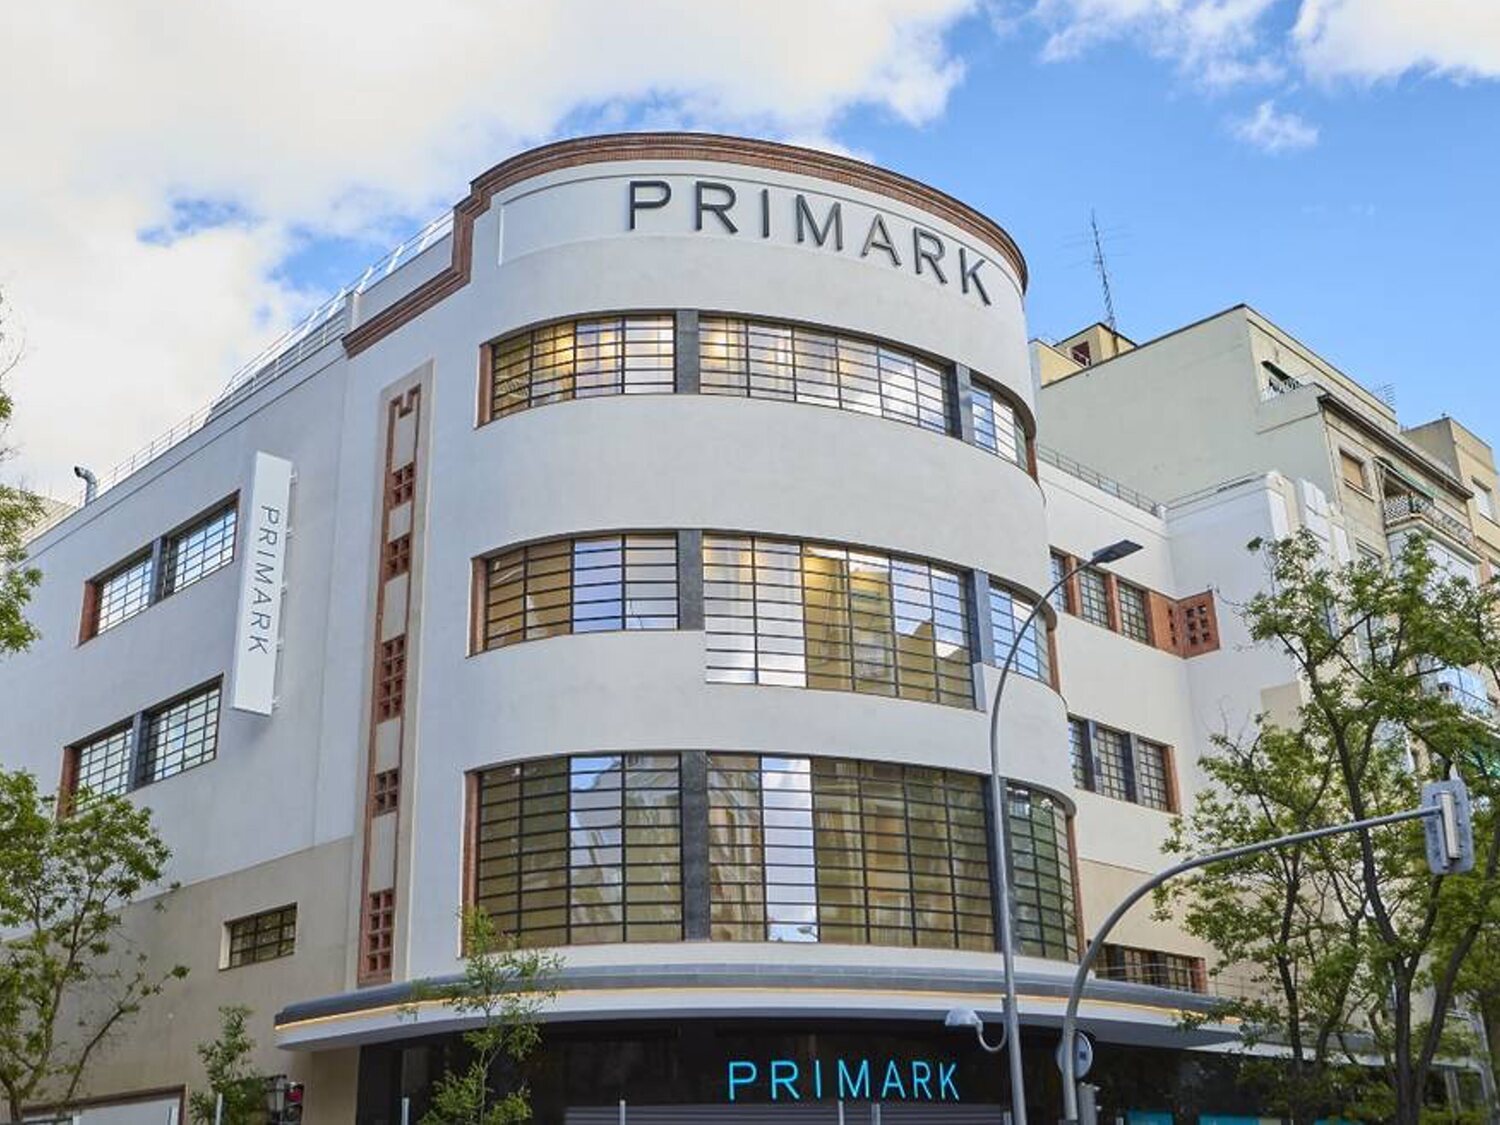 Primark abre el 23 de mayo esta tienda de cinco plantas en Madrid: más de 200 nuevos empleos